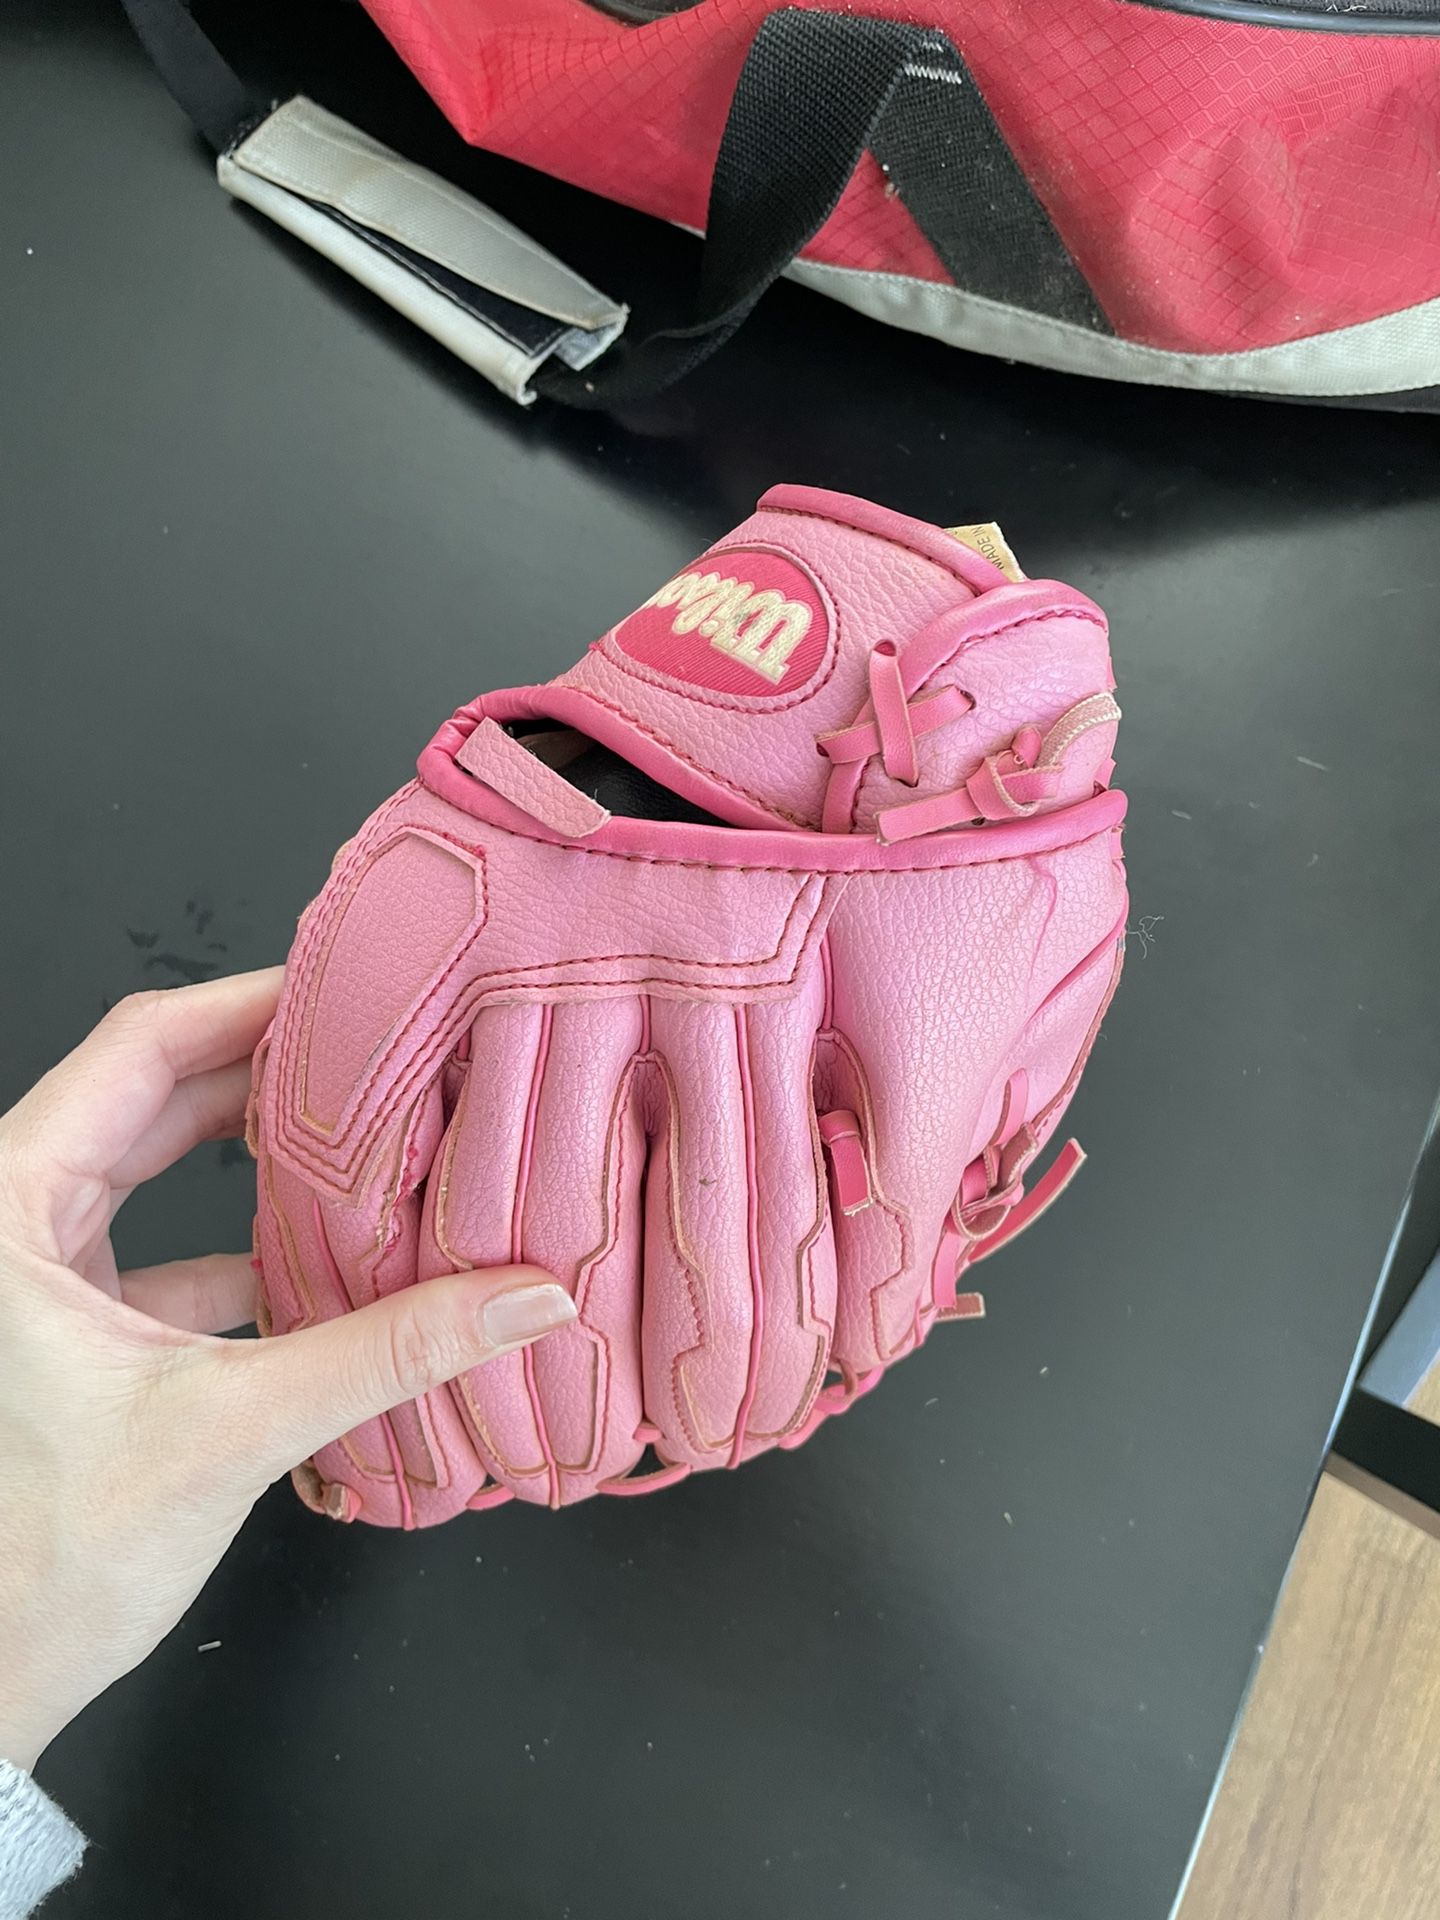 Youth Baseball Glove 